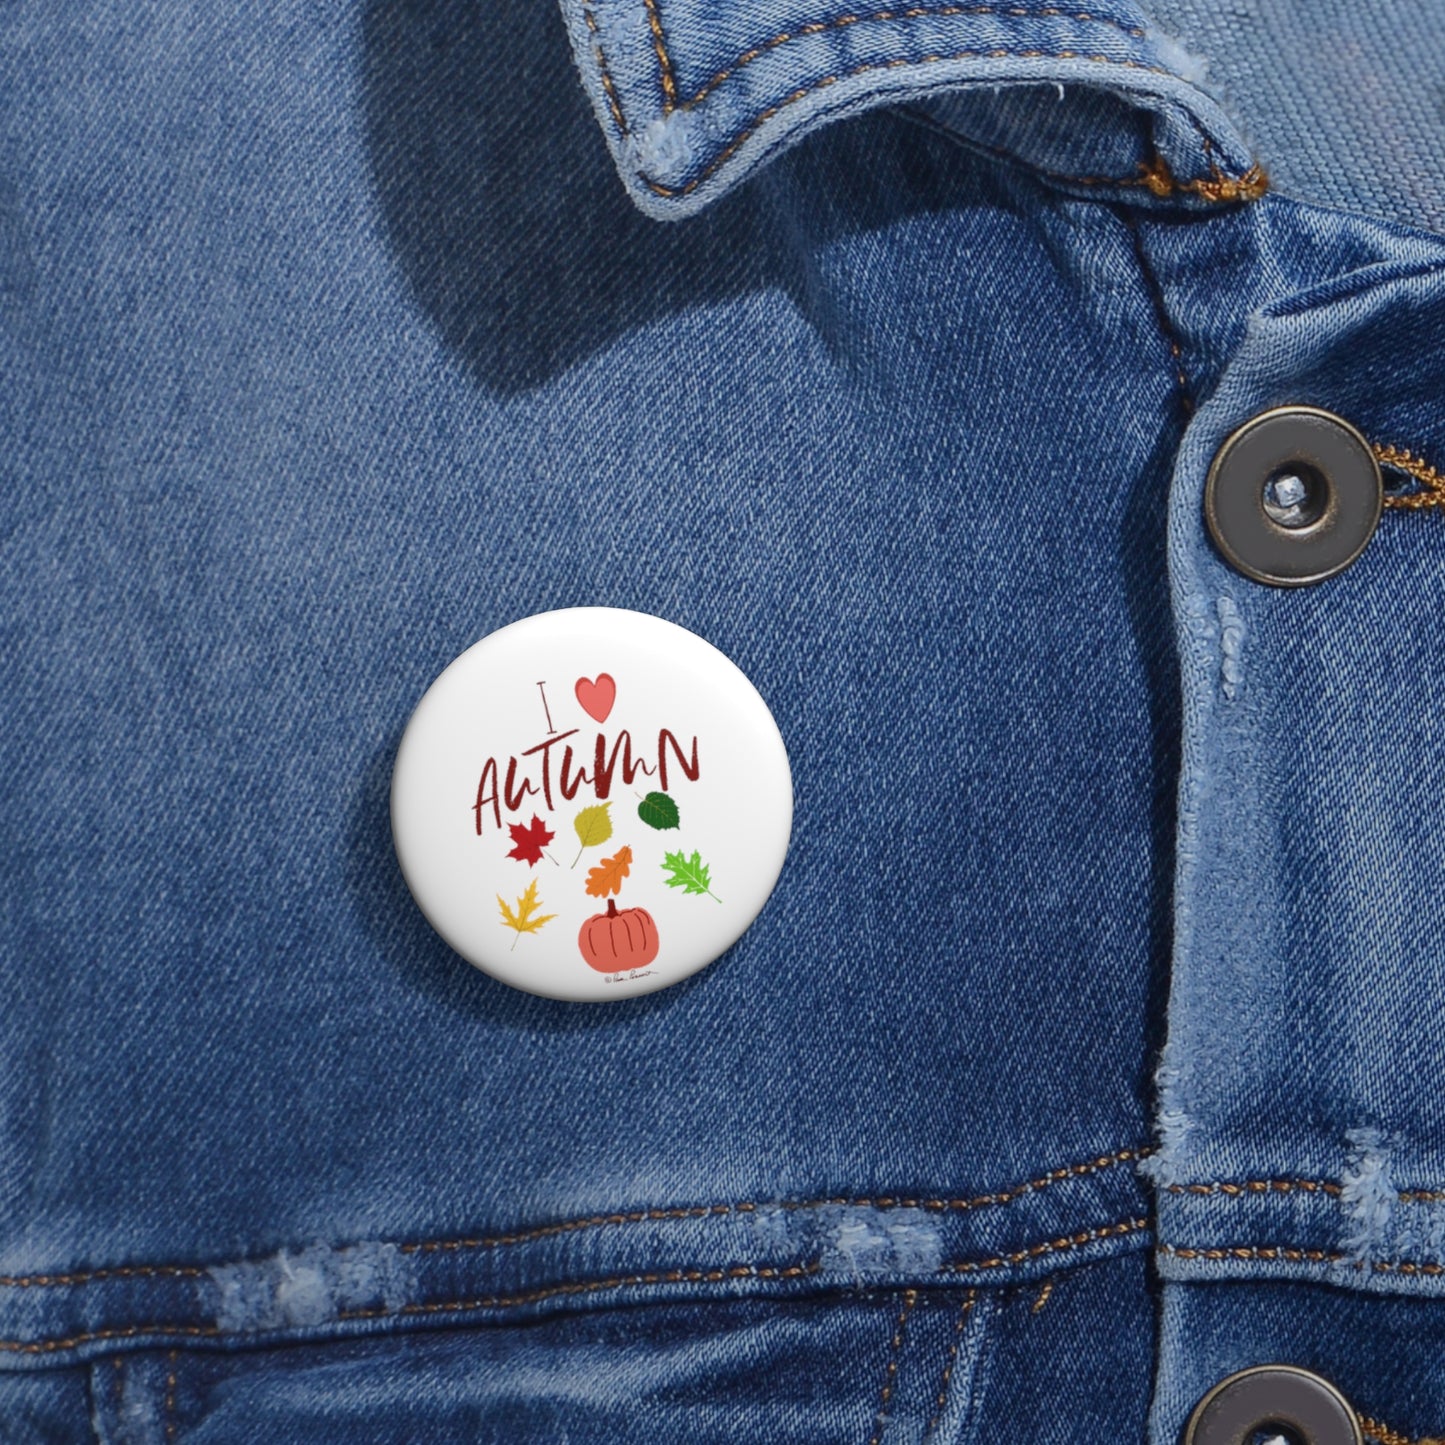 1.25" button on a denim shirt